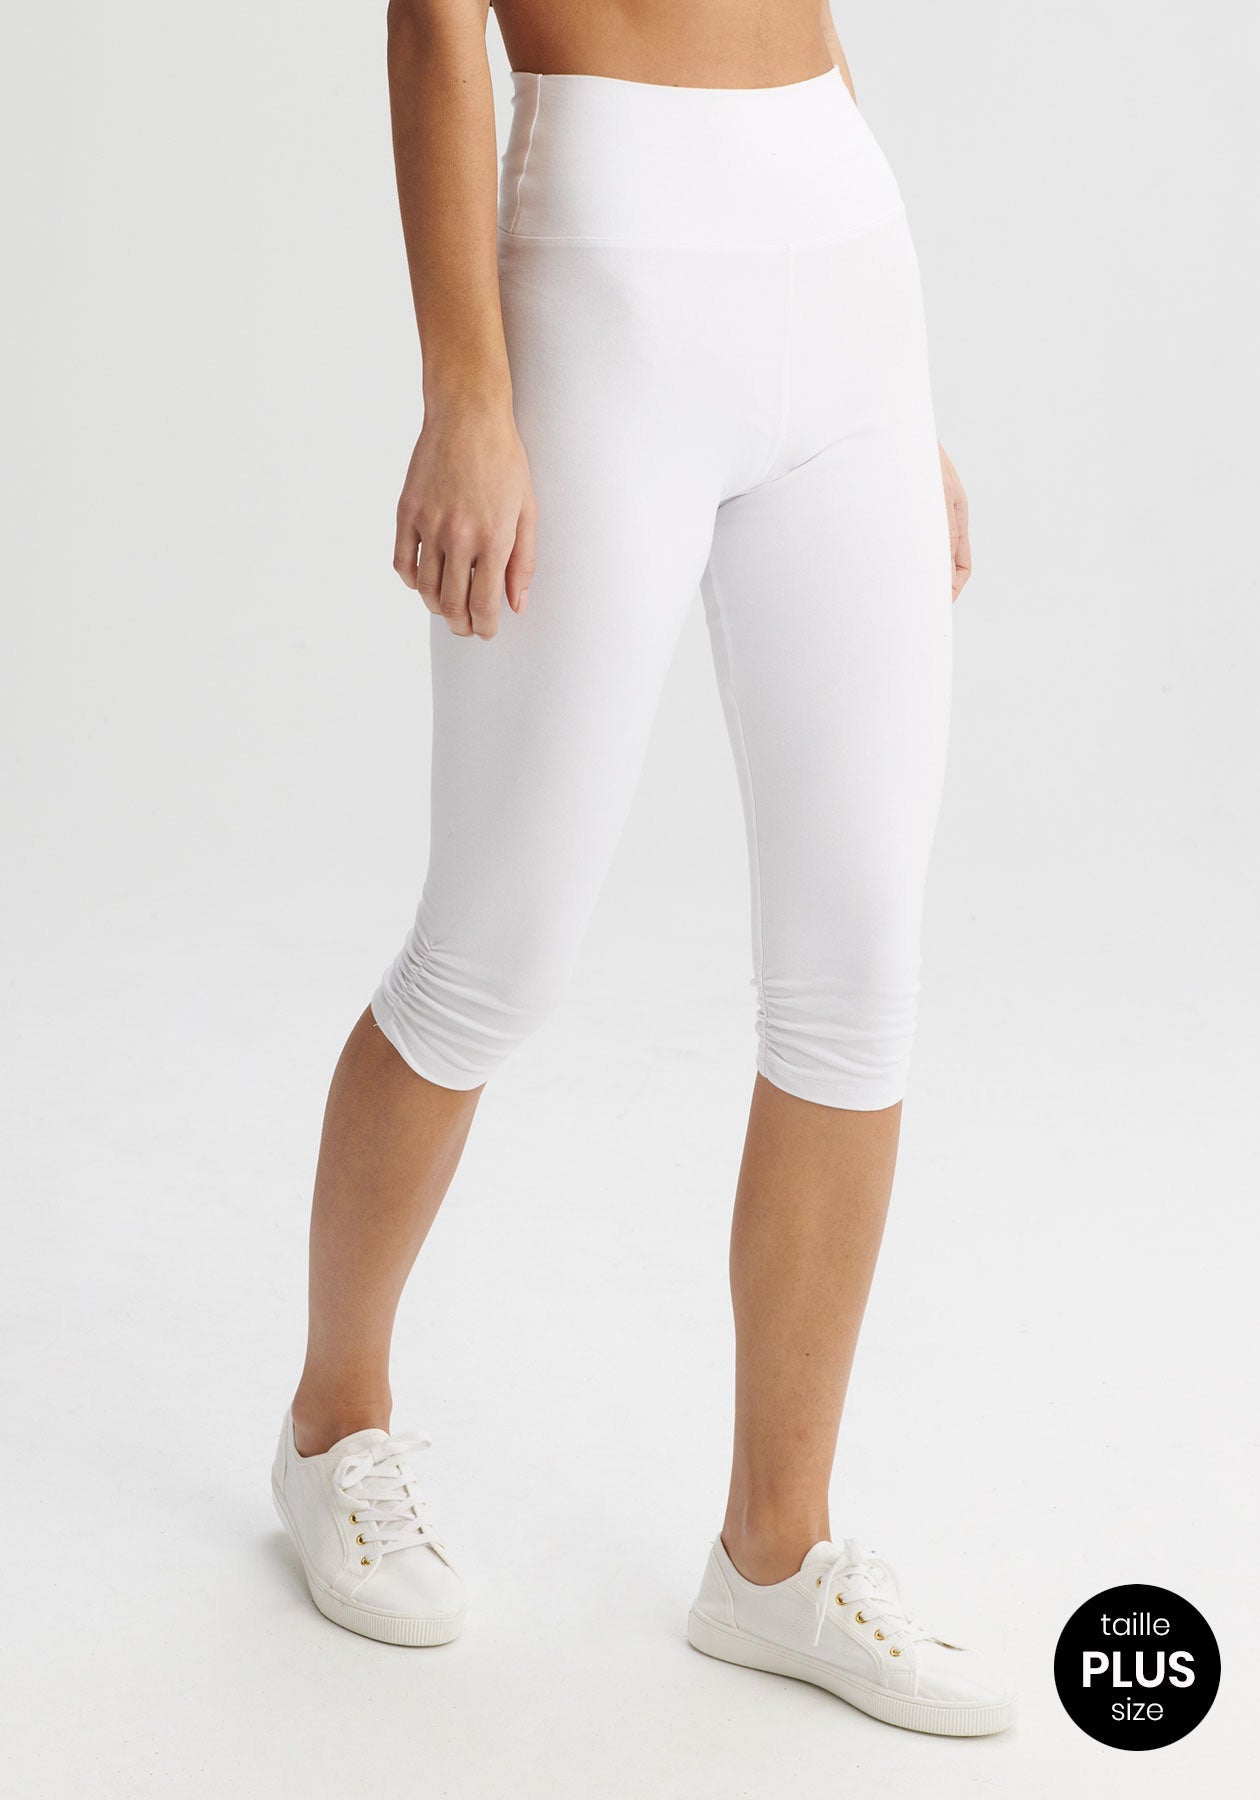 Lavishing white color cotton leggings